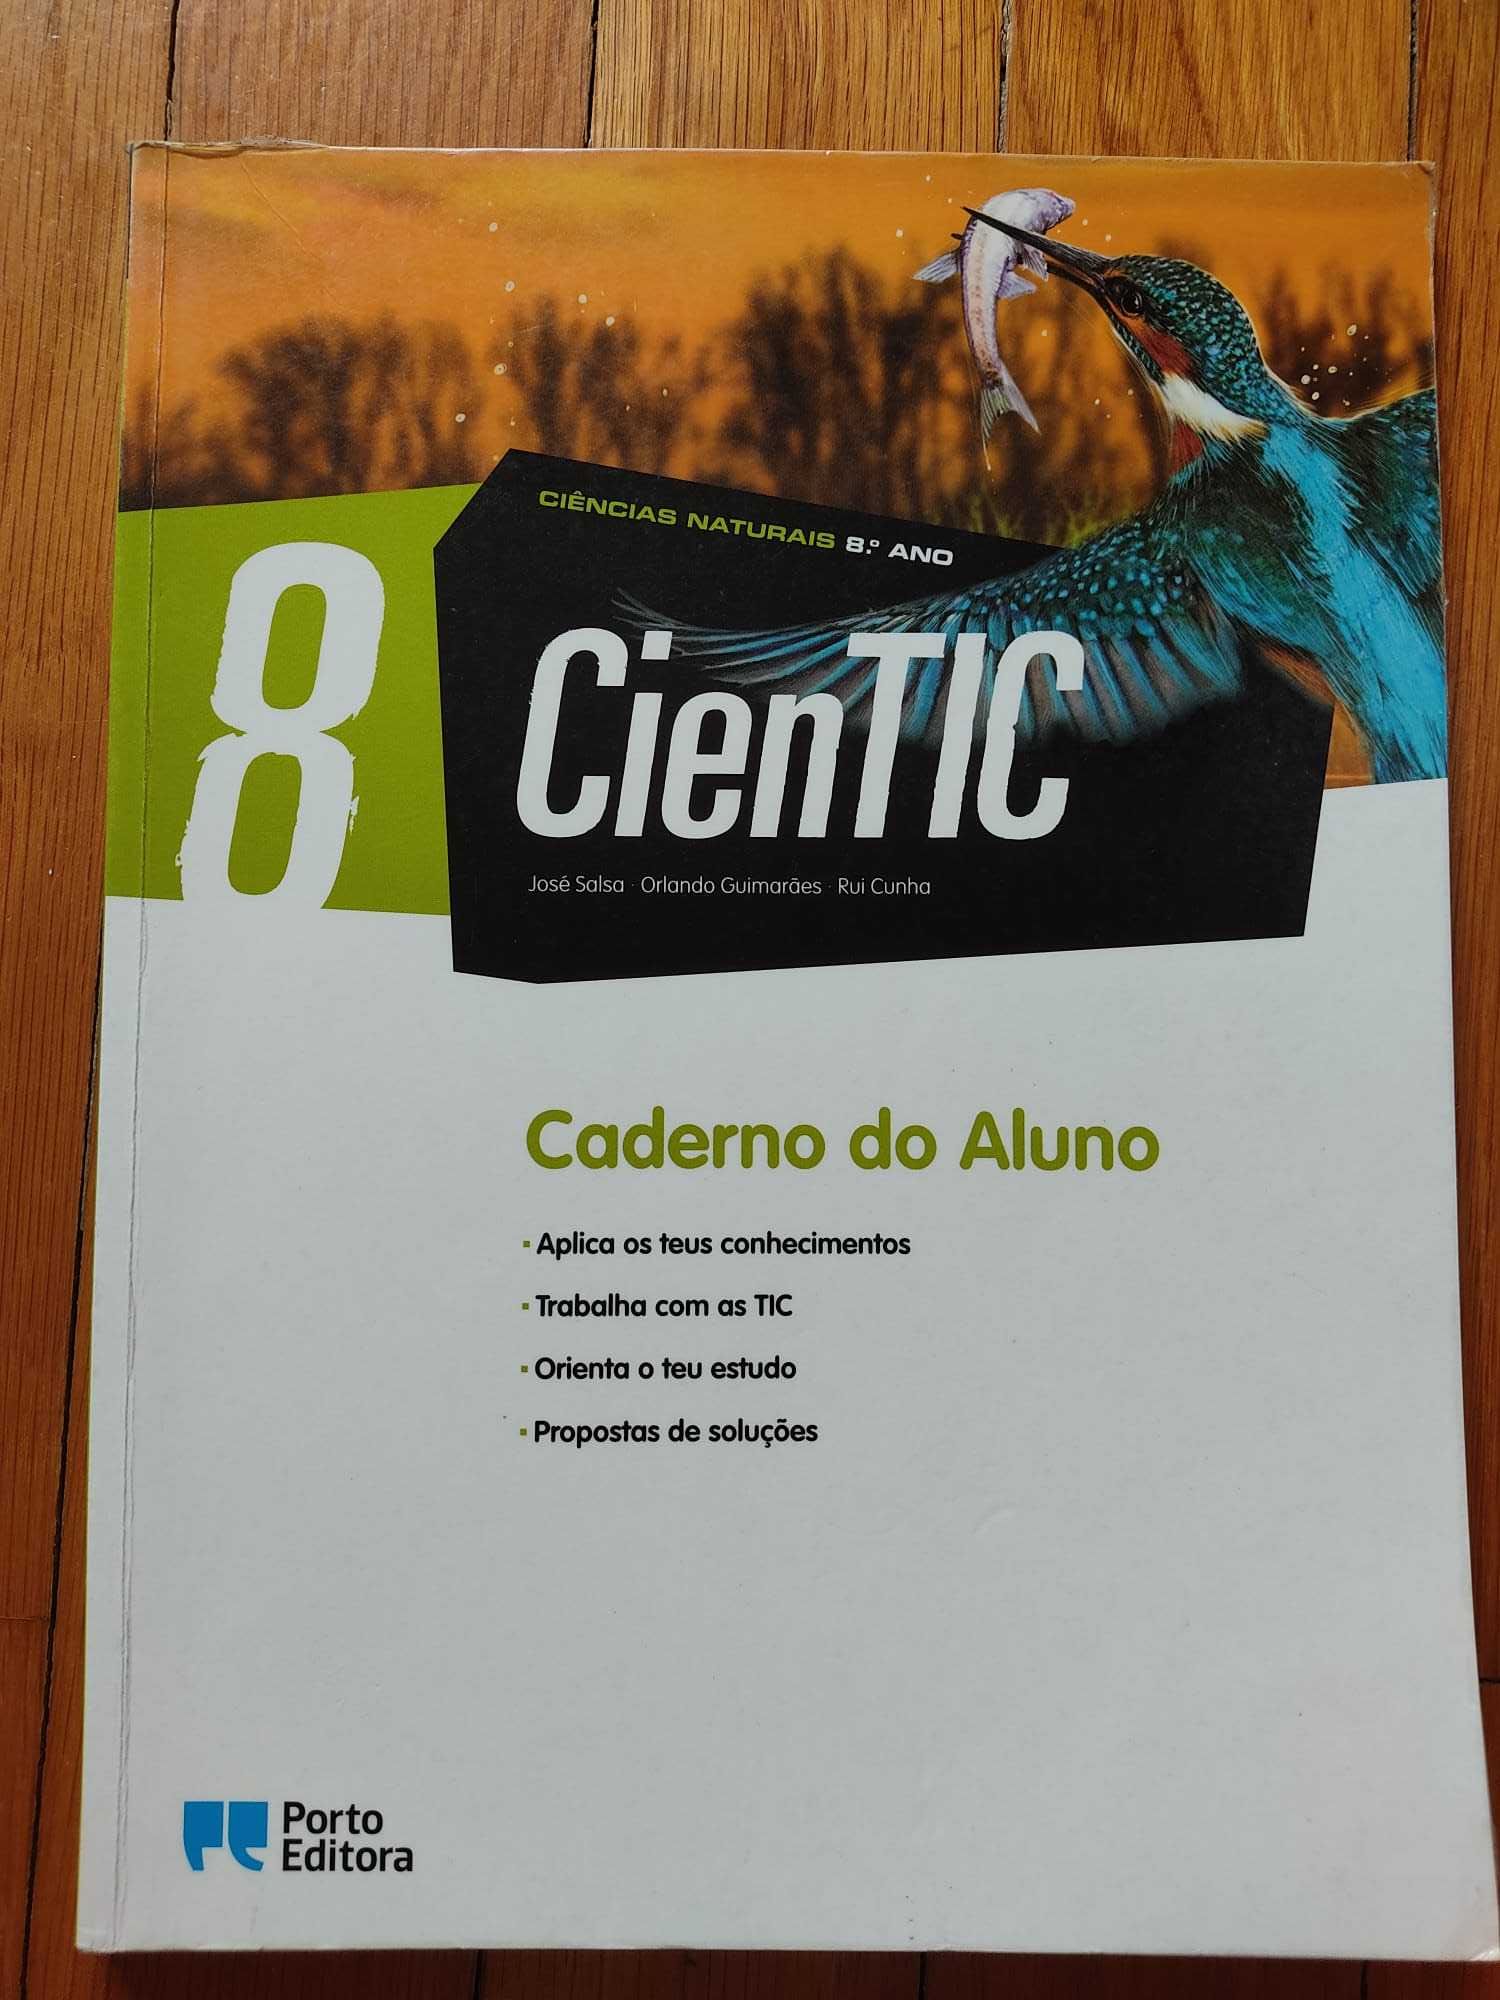 "Cientic 8" Caderno do aluno e Guia de vida sustentável (Porto Ed) 8º